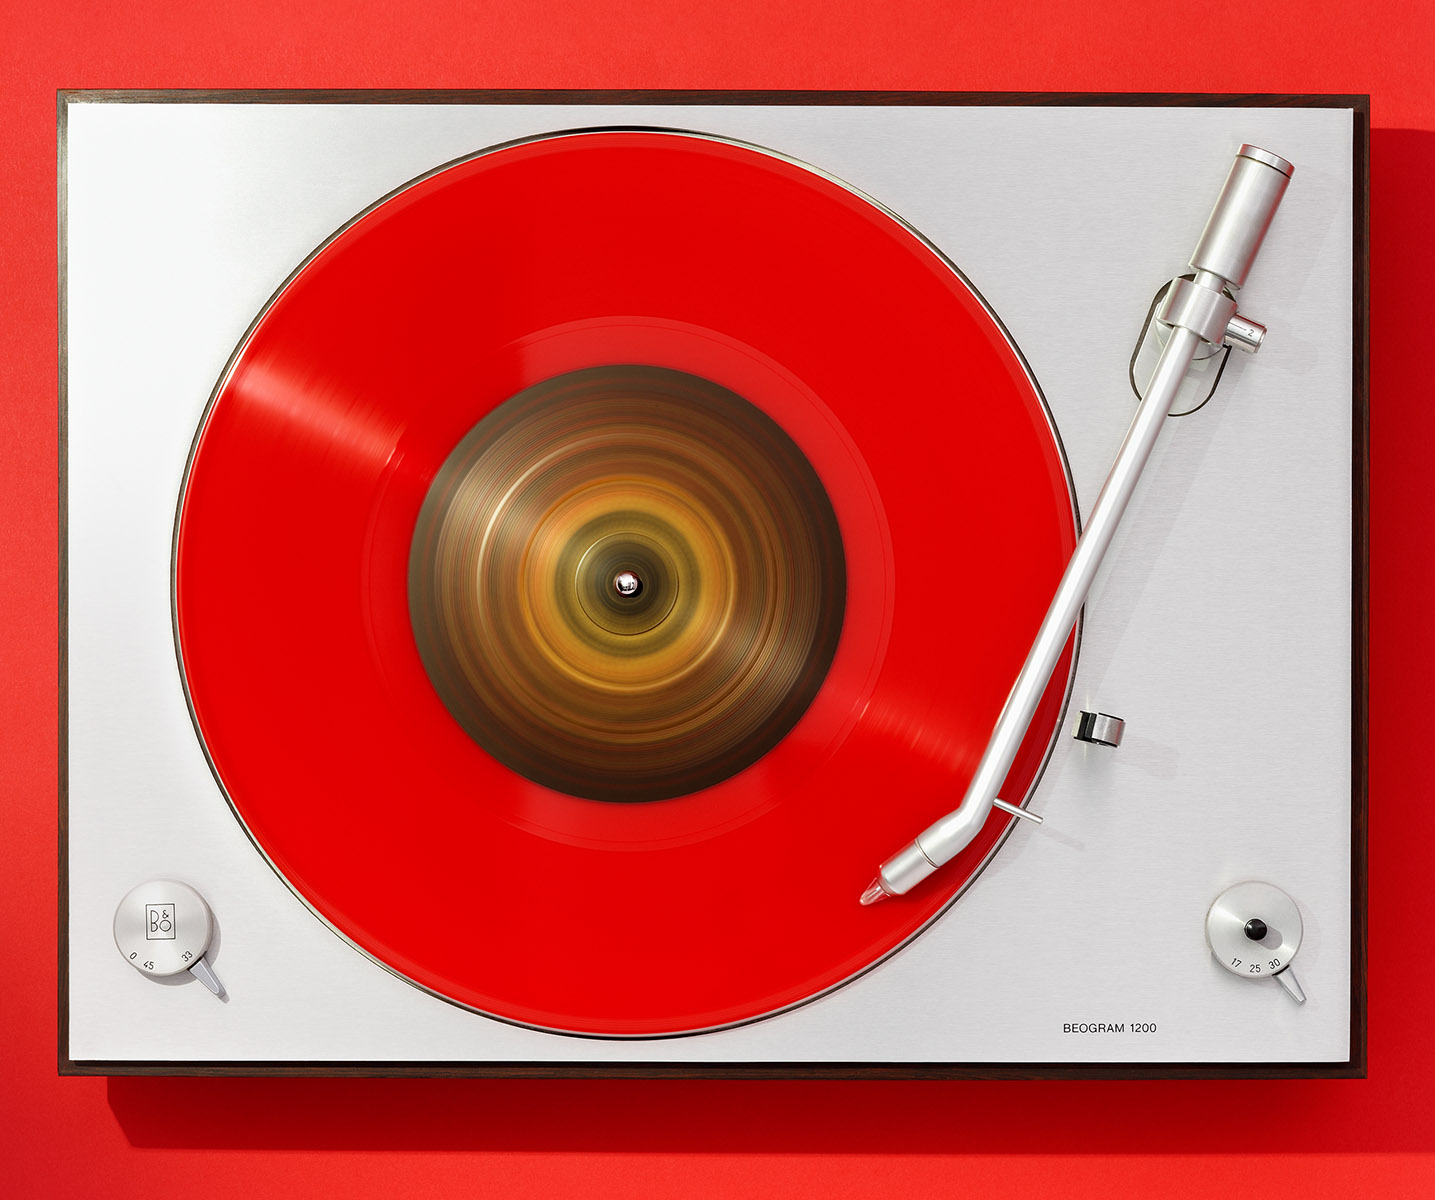 Platine disque vintage Bang & Olufsen, modèle Beogram 1200 et disque vinyl rouge maxi 45T, fond rouge